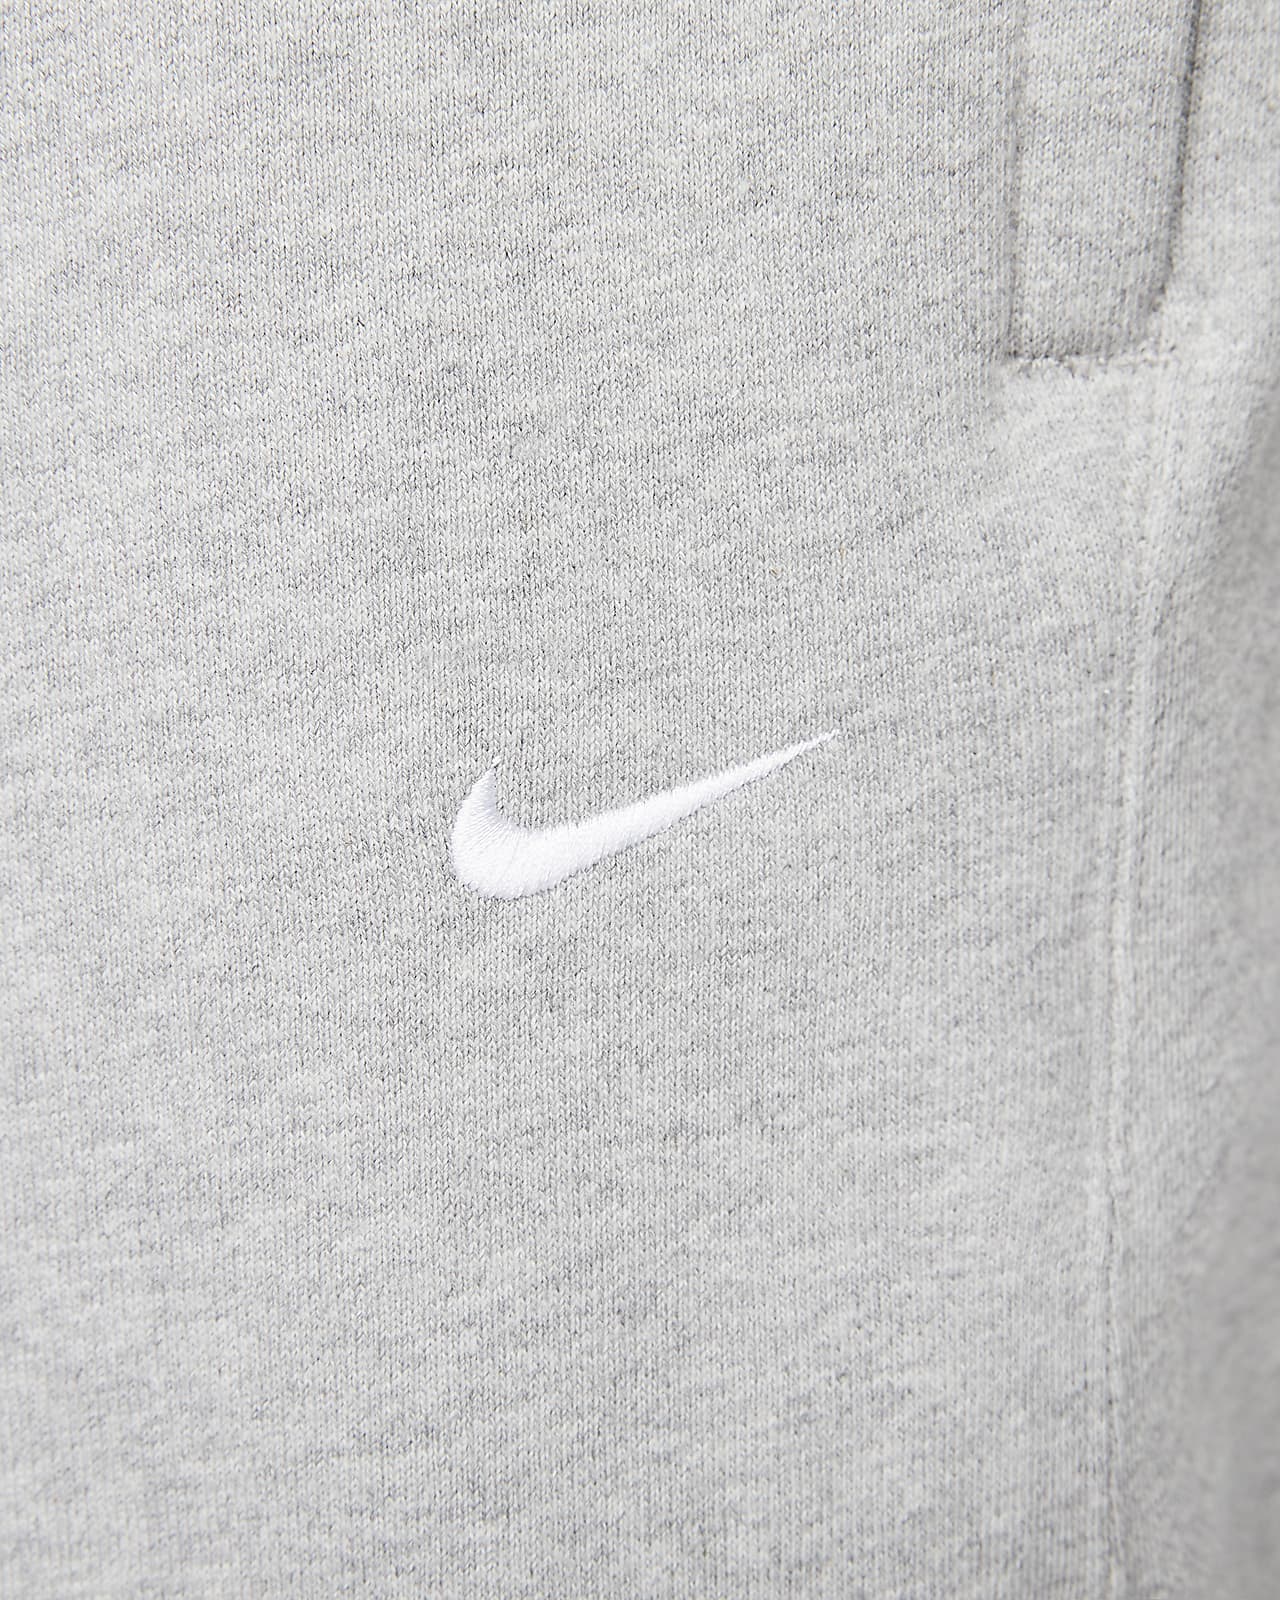 Camisola de lã cardada Nike Solo Swoosh para homem. Nike PT